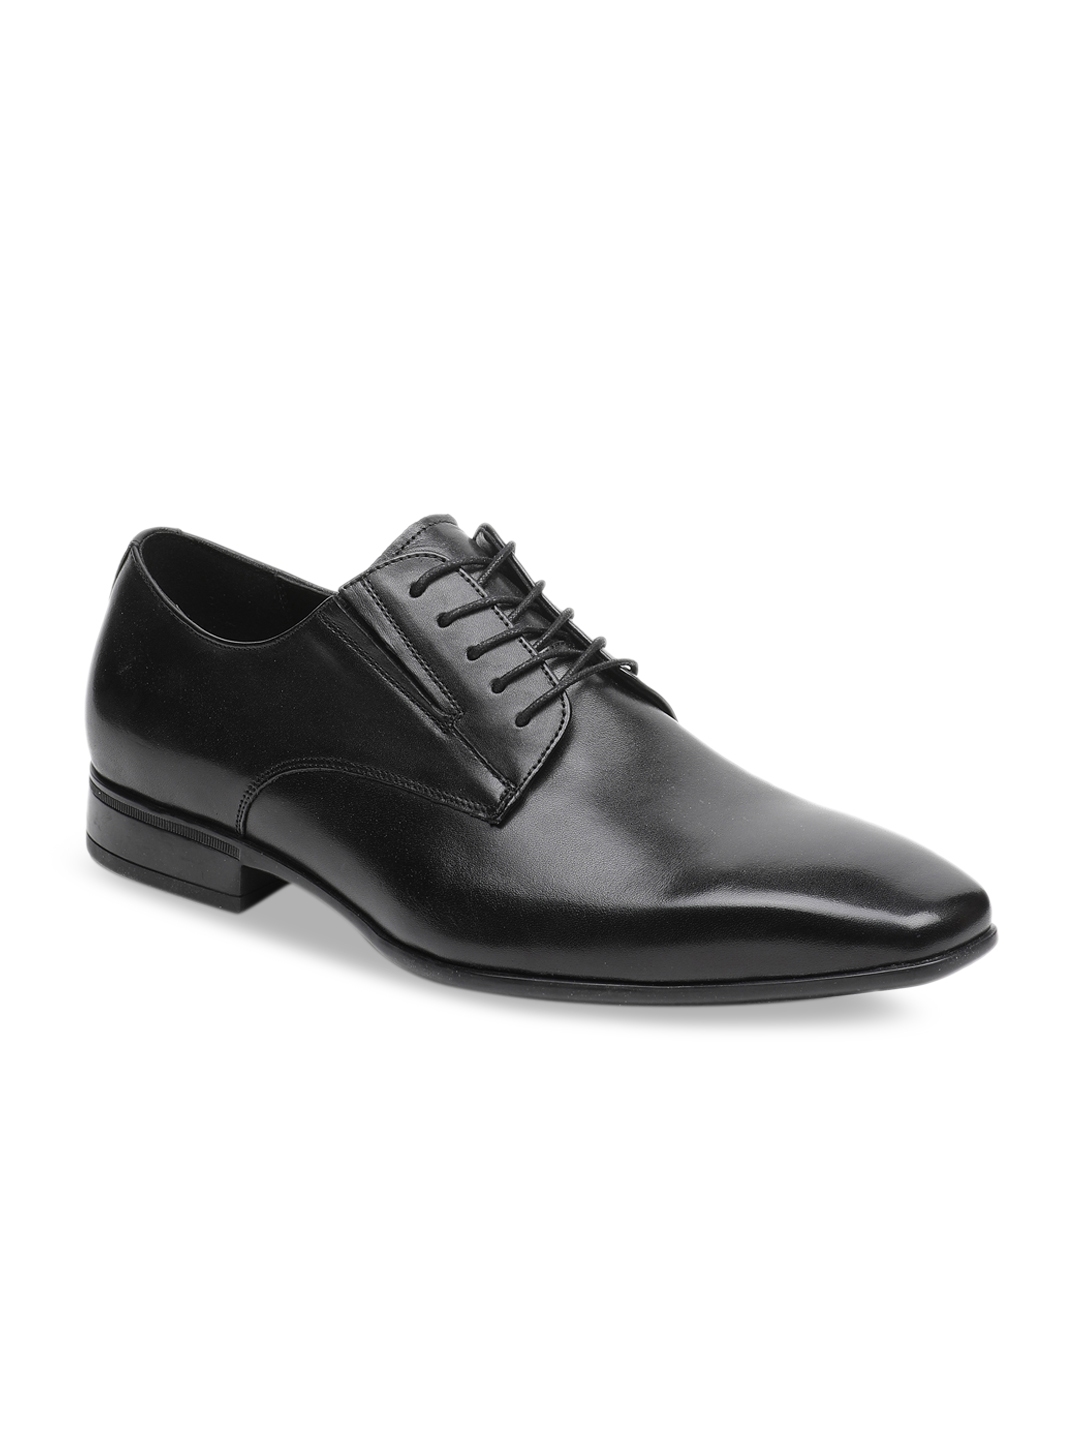 Buy ALDO Men Black Leather Formal Derbys - Formal Shoes for Men 9815963 ...